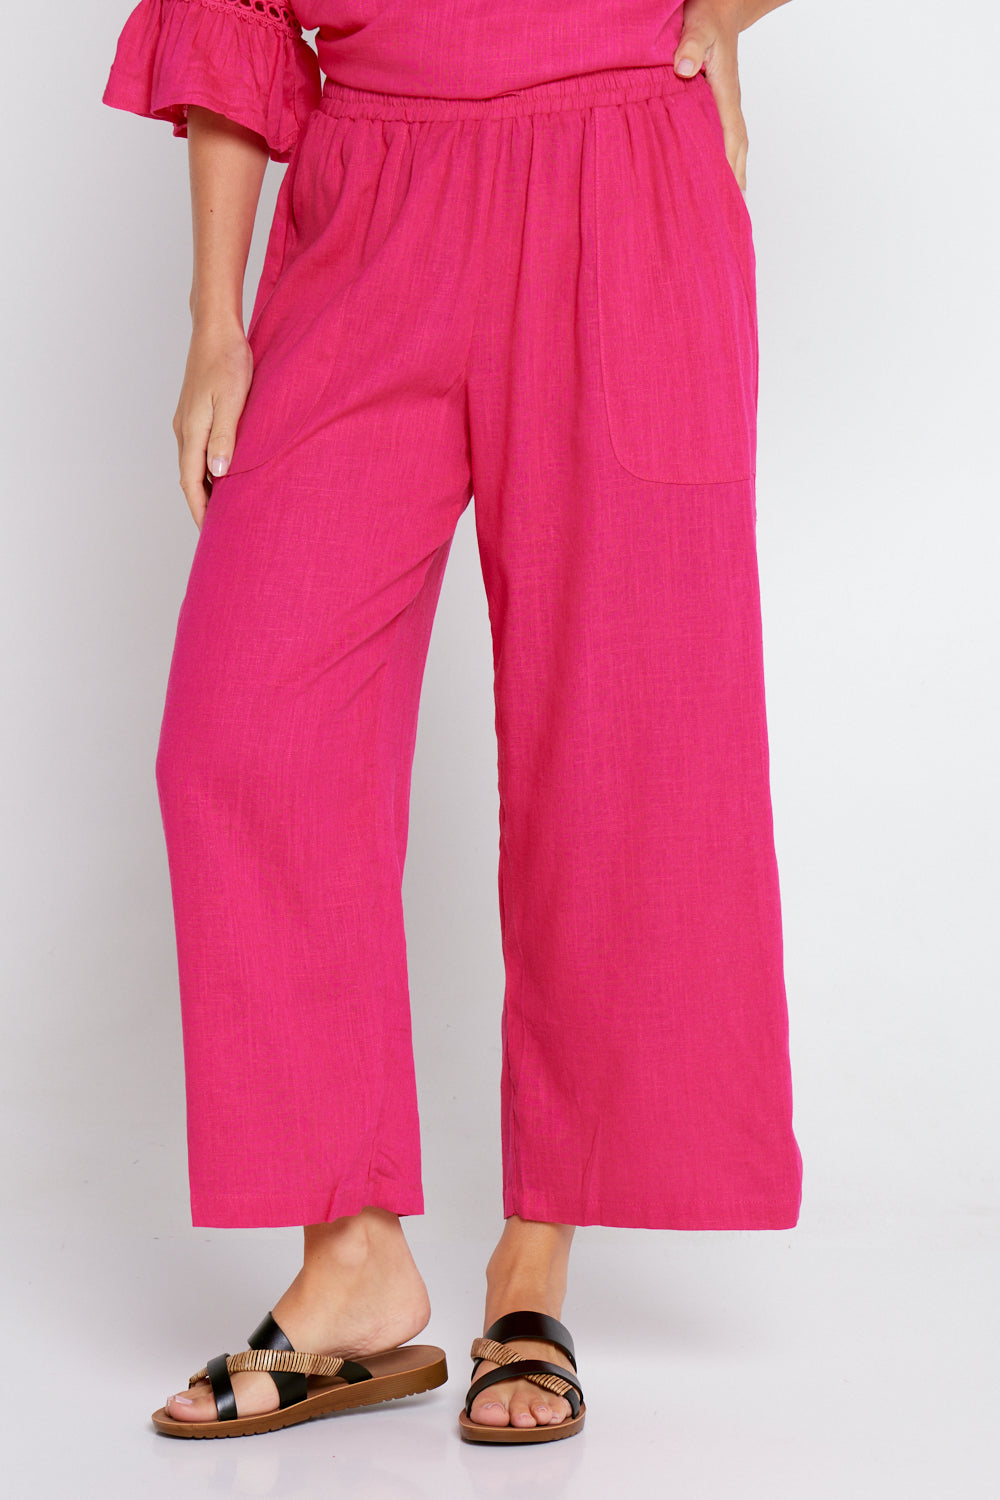 Aiko Linen Pants - Hot Pink